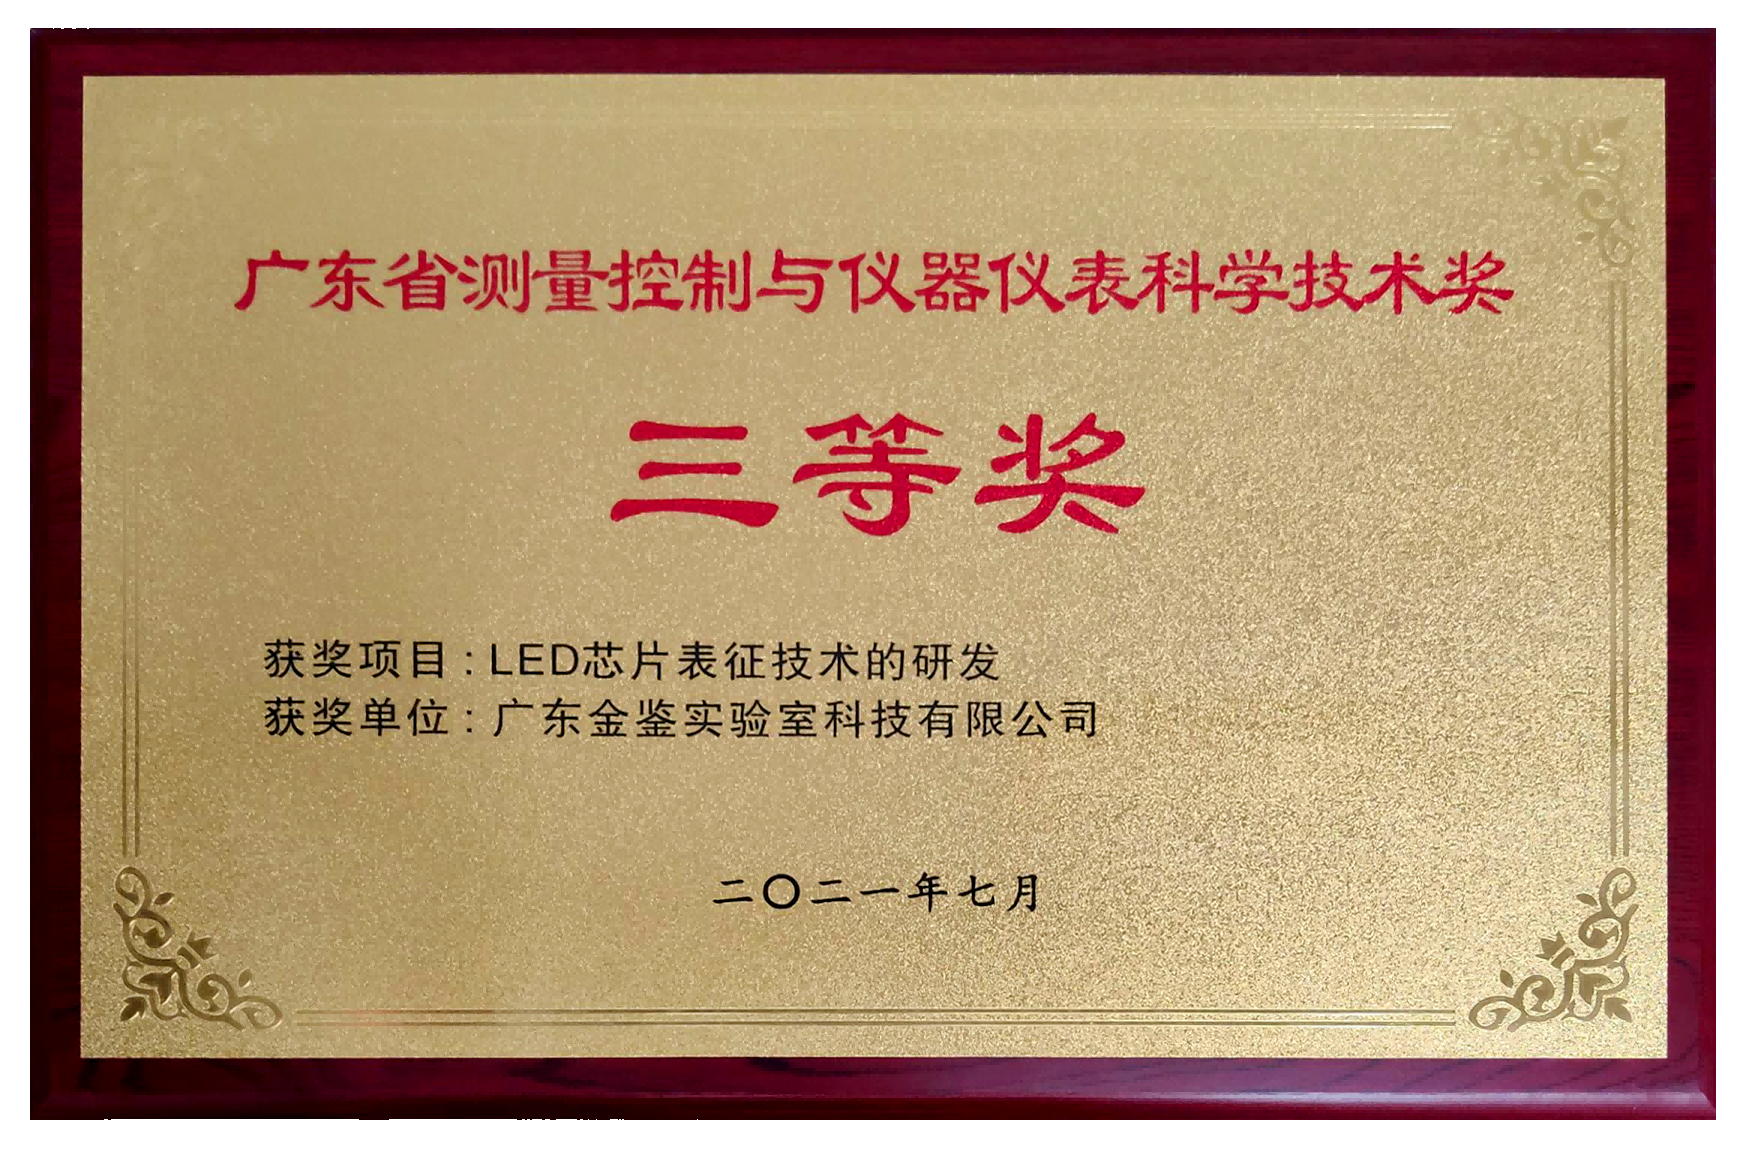 广东省测量控制与仪器仪表科学技术奖 三等奖奖牌(1).png